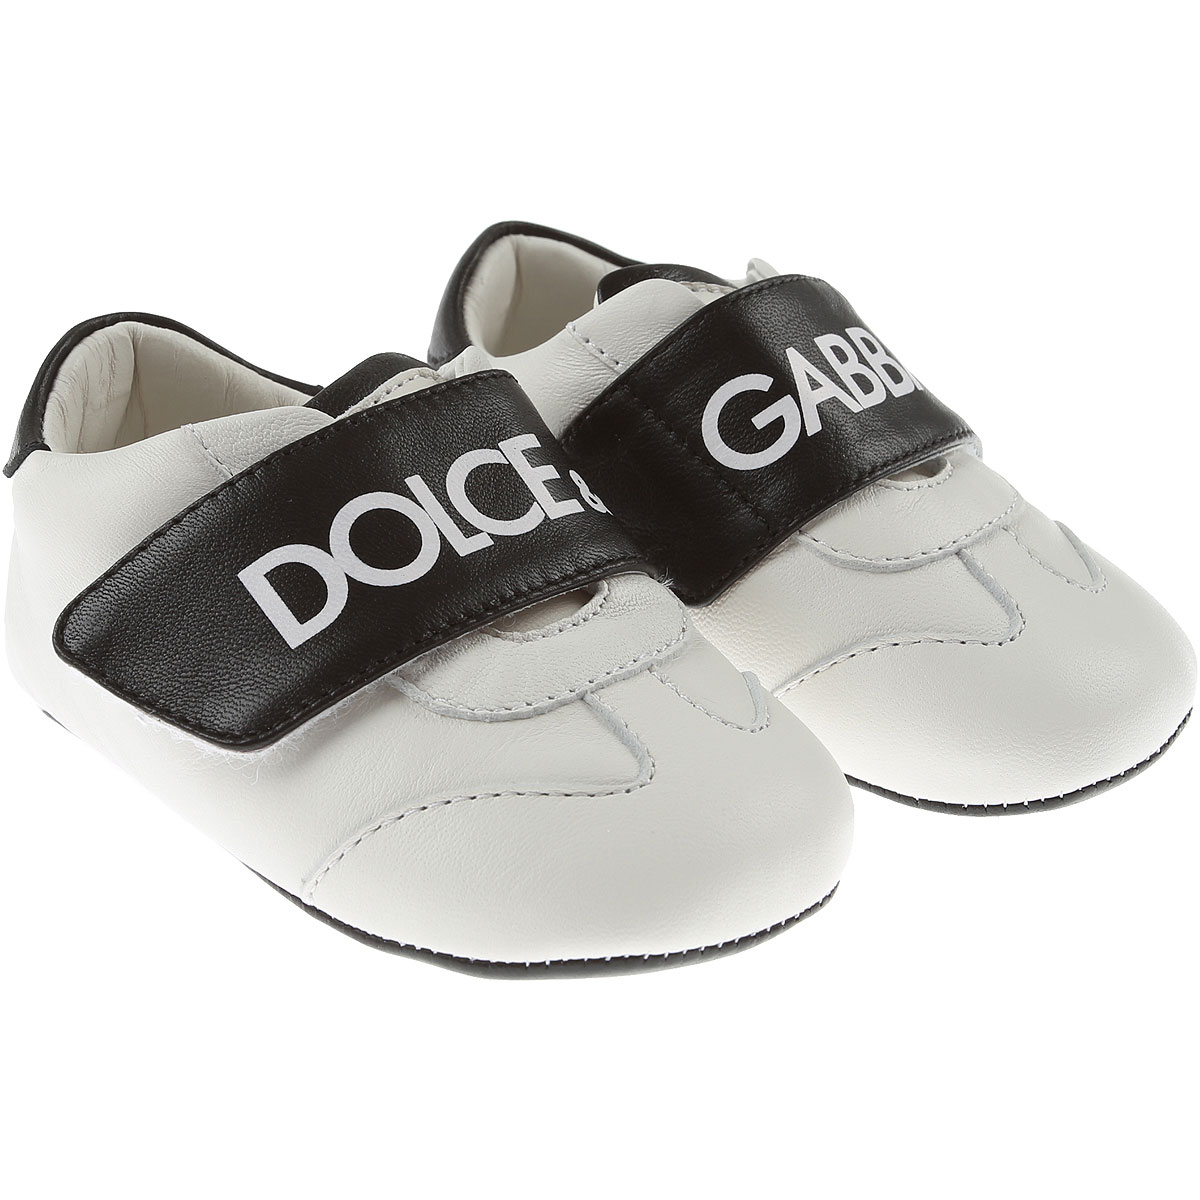 Dolce & Gabbana Baby Schuhe für Jungen Günstig im Sale, Weiss, Leder, 2017, 16 17 19